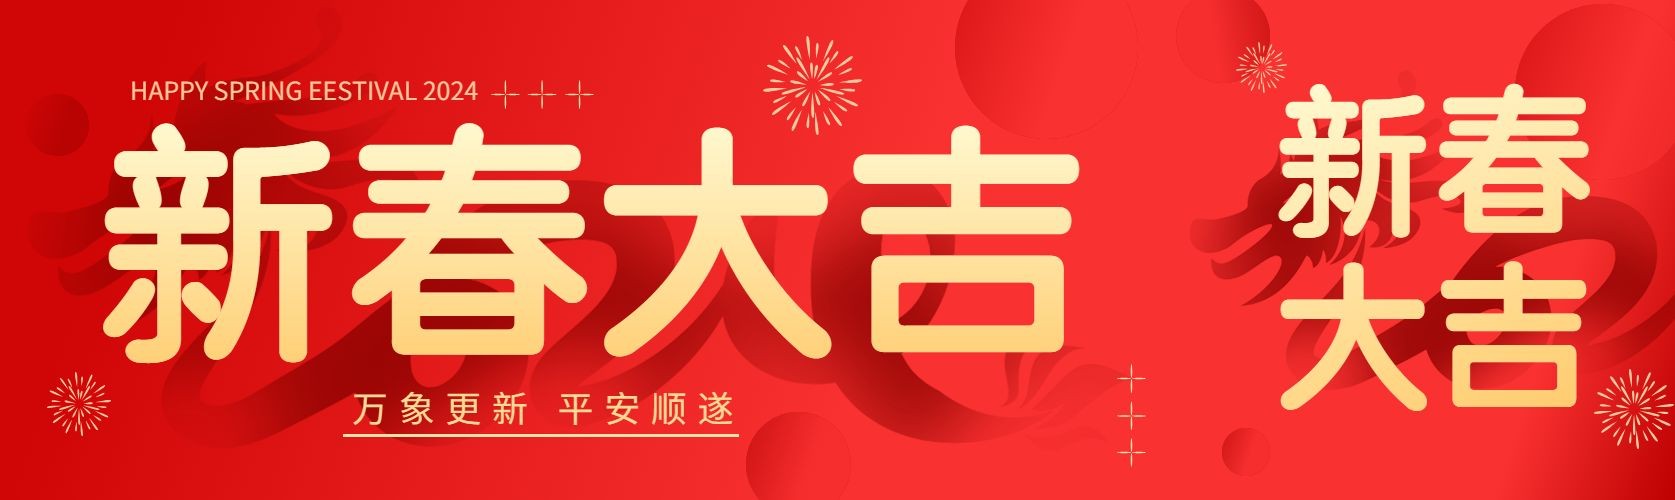 春节节日祝福喜庆公众号首次图预览效果